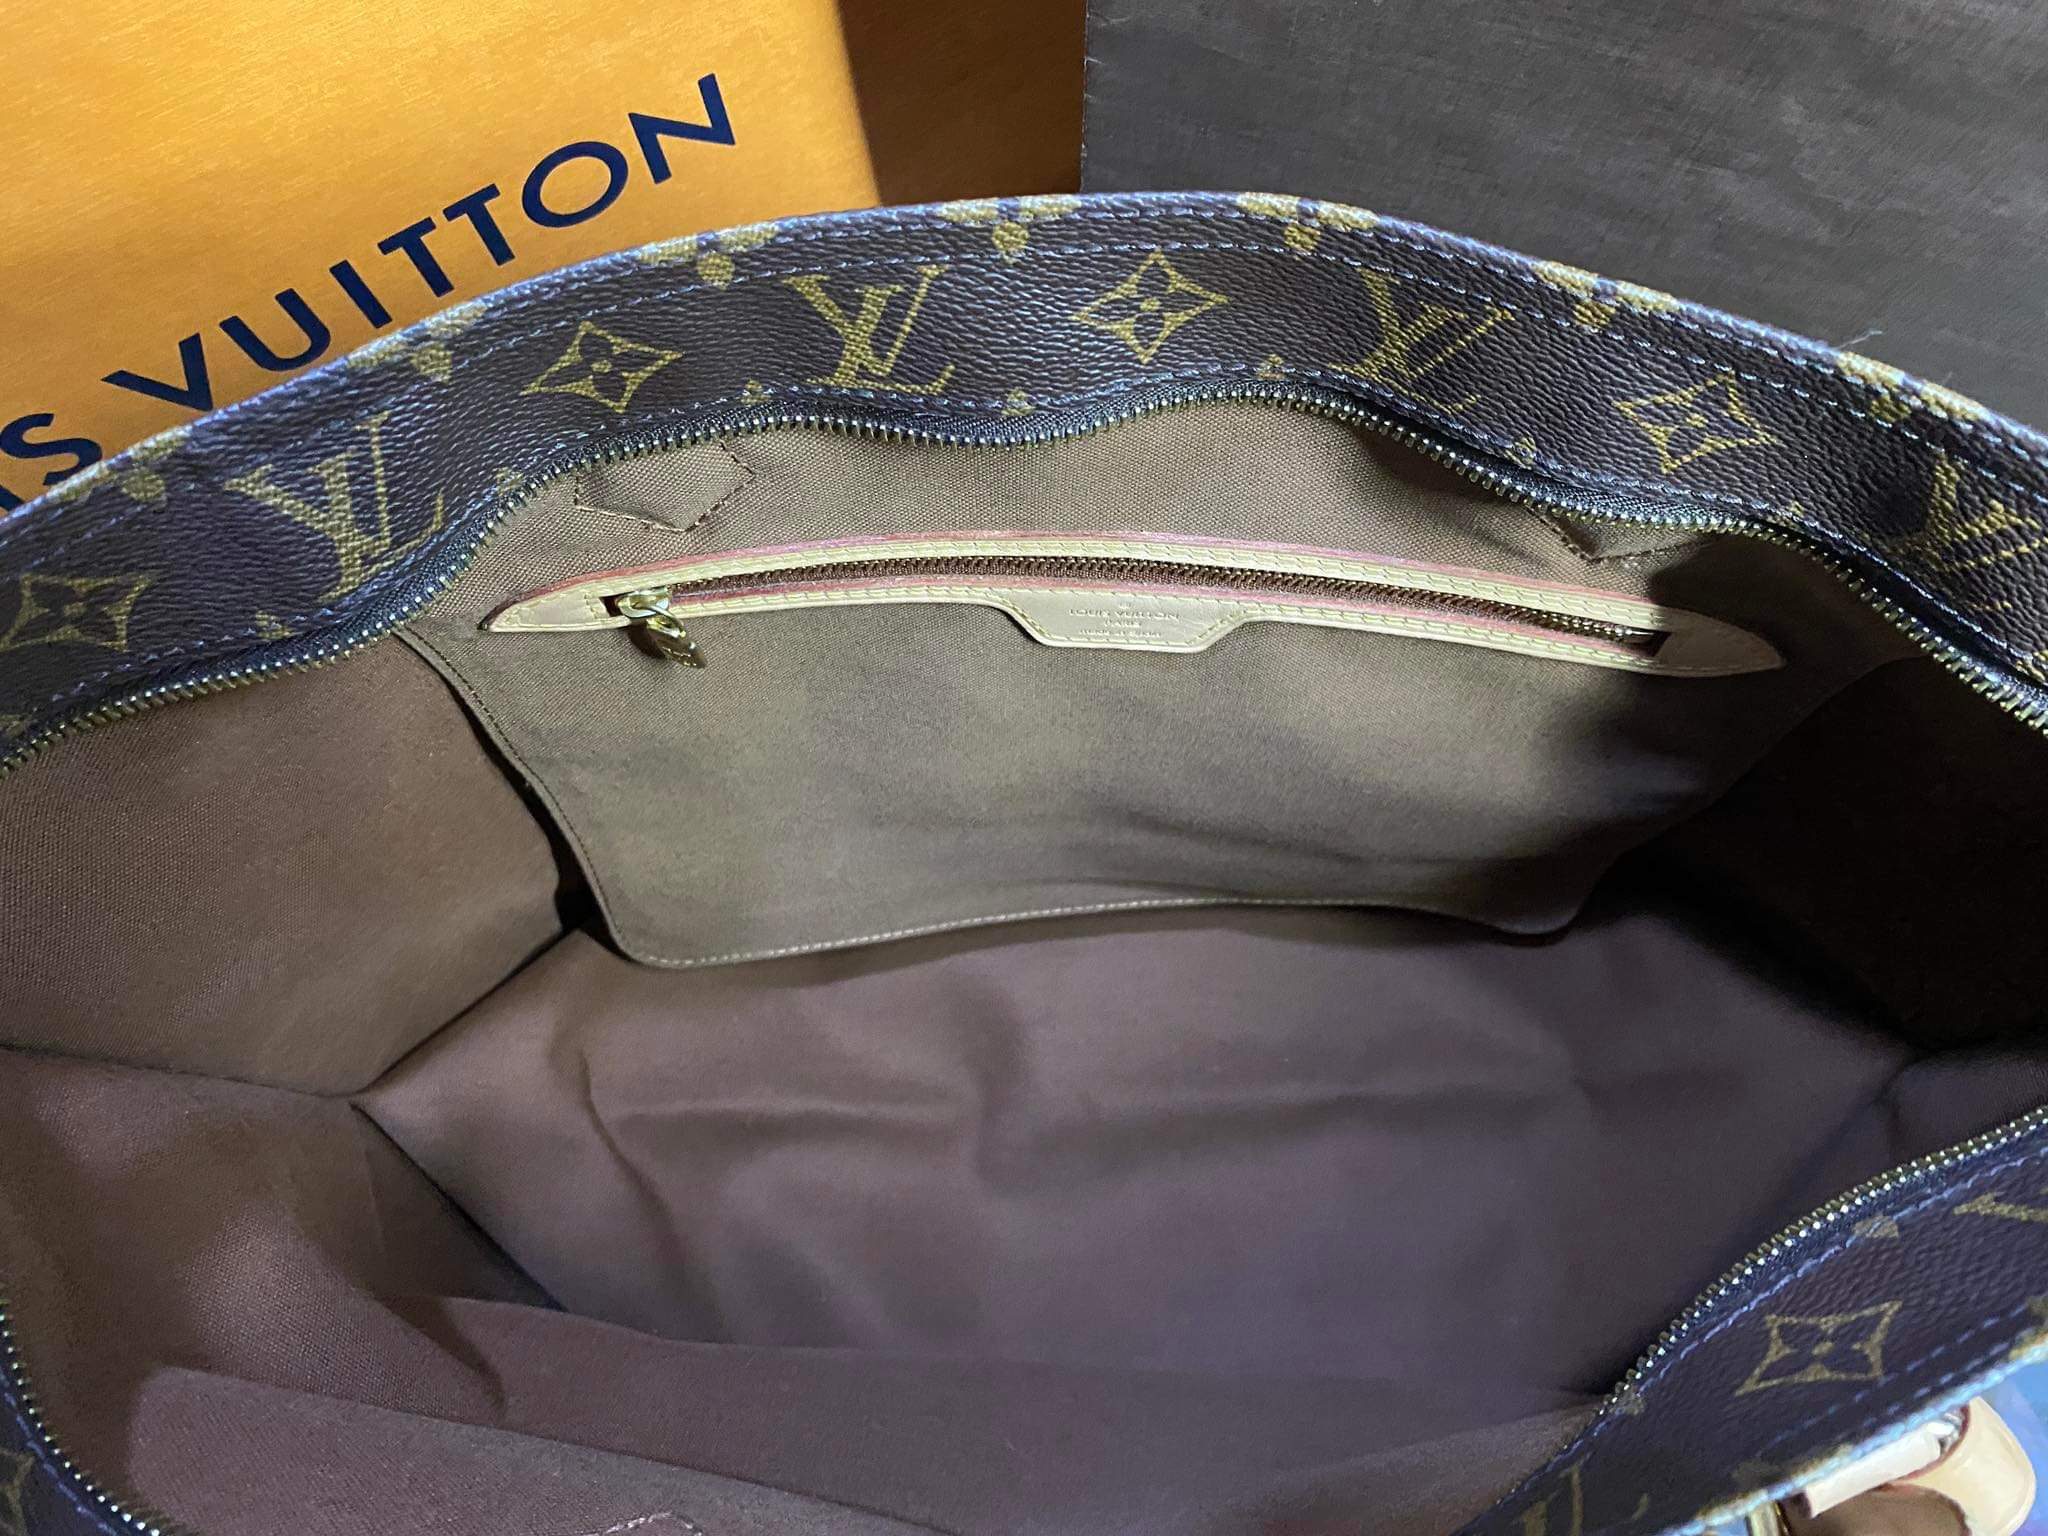 COMPARISON REVIEW: Louis Vuitton NEVERFULL MM -vs- ALLIN PM